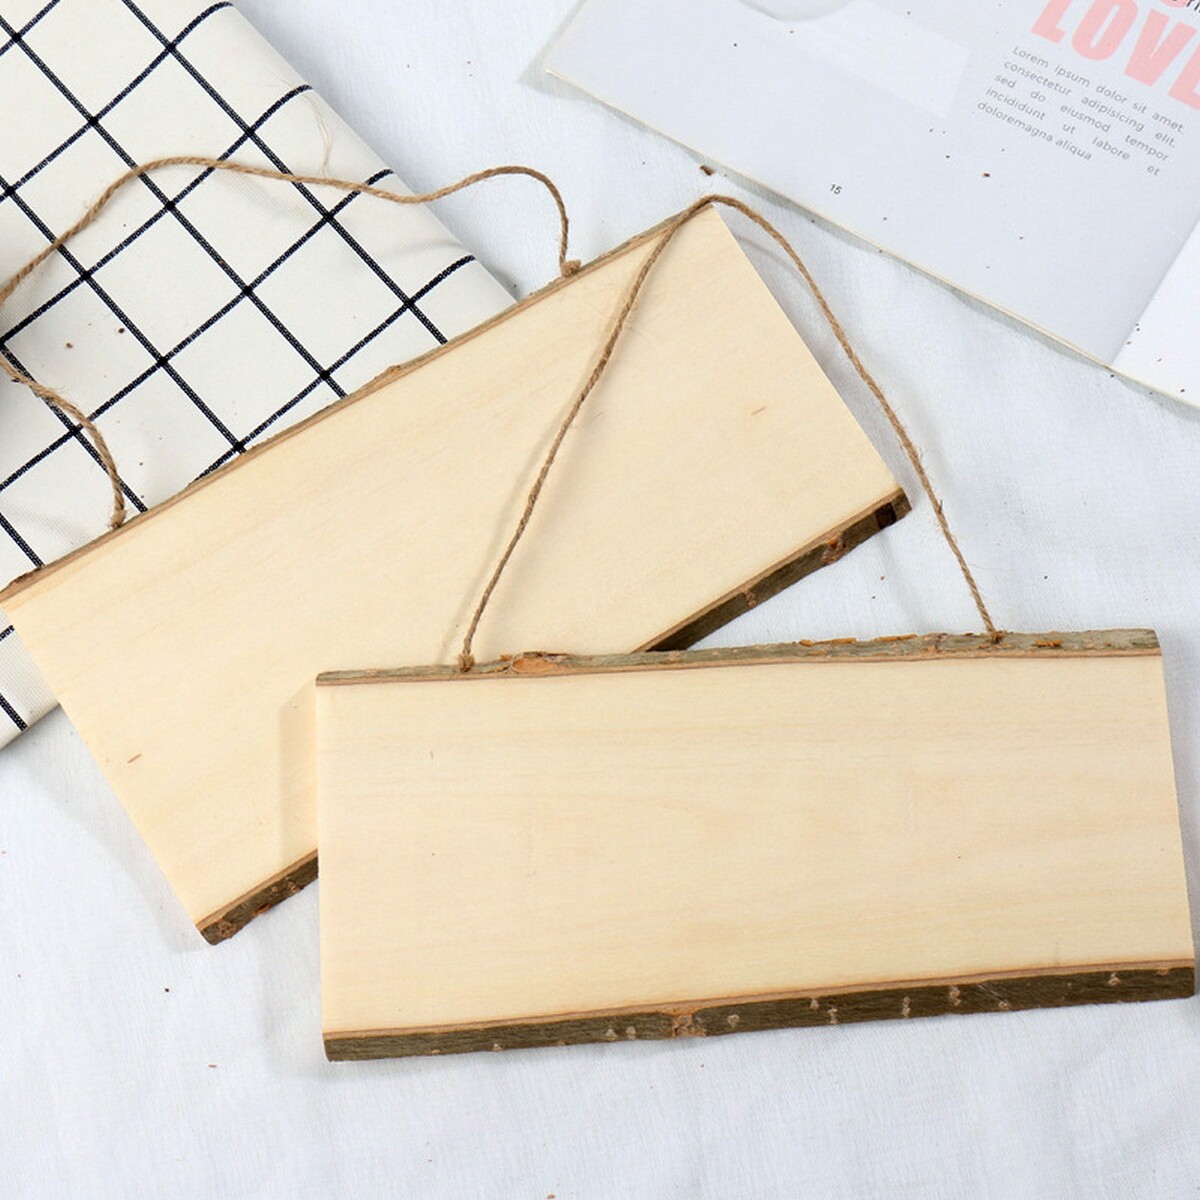 Доска деревянная для рисования и записей, 25 × 12 × 1 см, набор мелков + губка набор кухня доска скалка толкушка